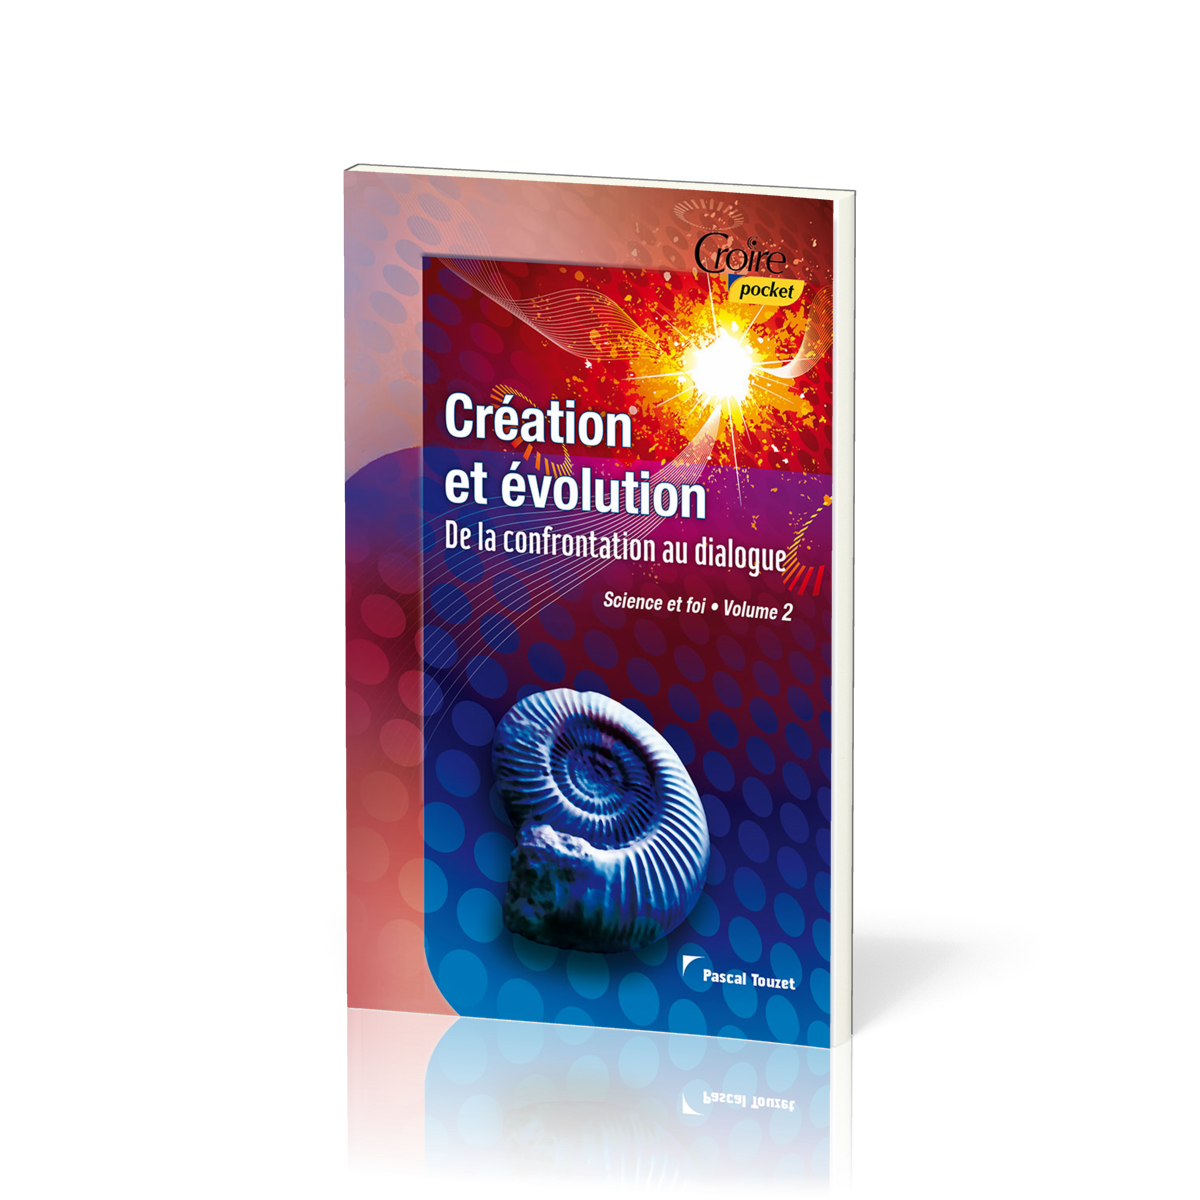 Création et évolution  - De la confrontation au dialogue [série Science et foi, volume 2]